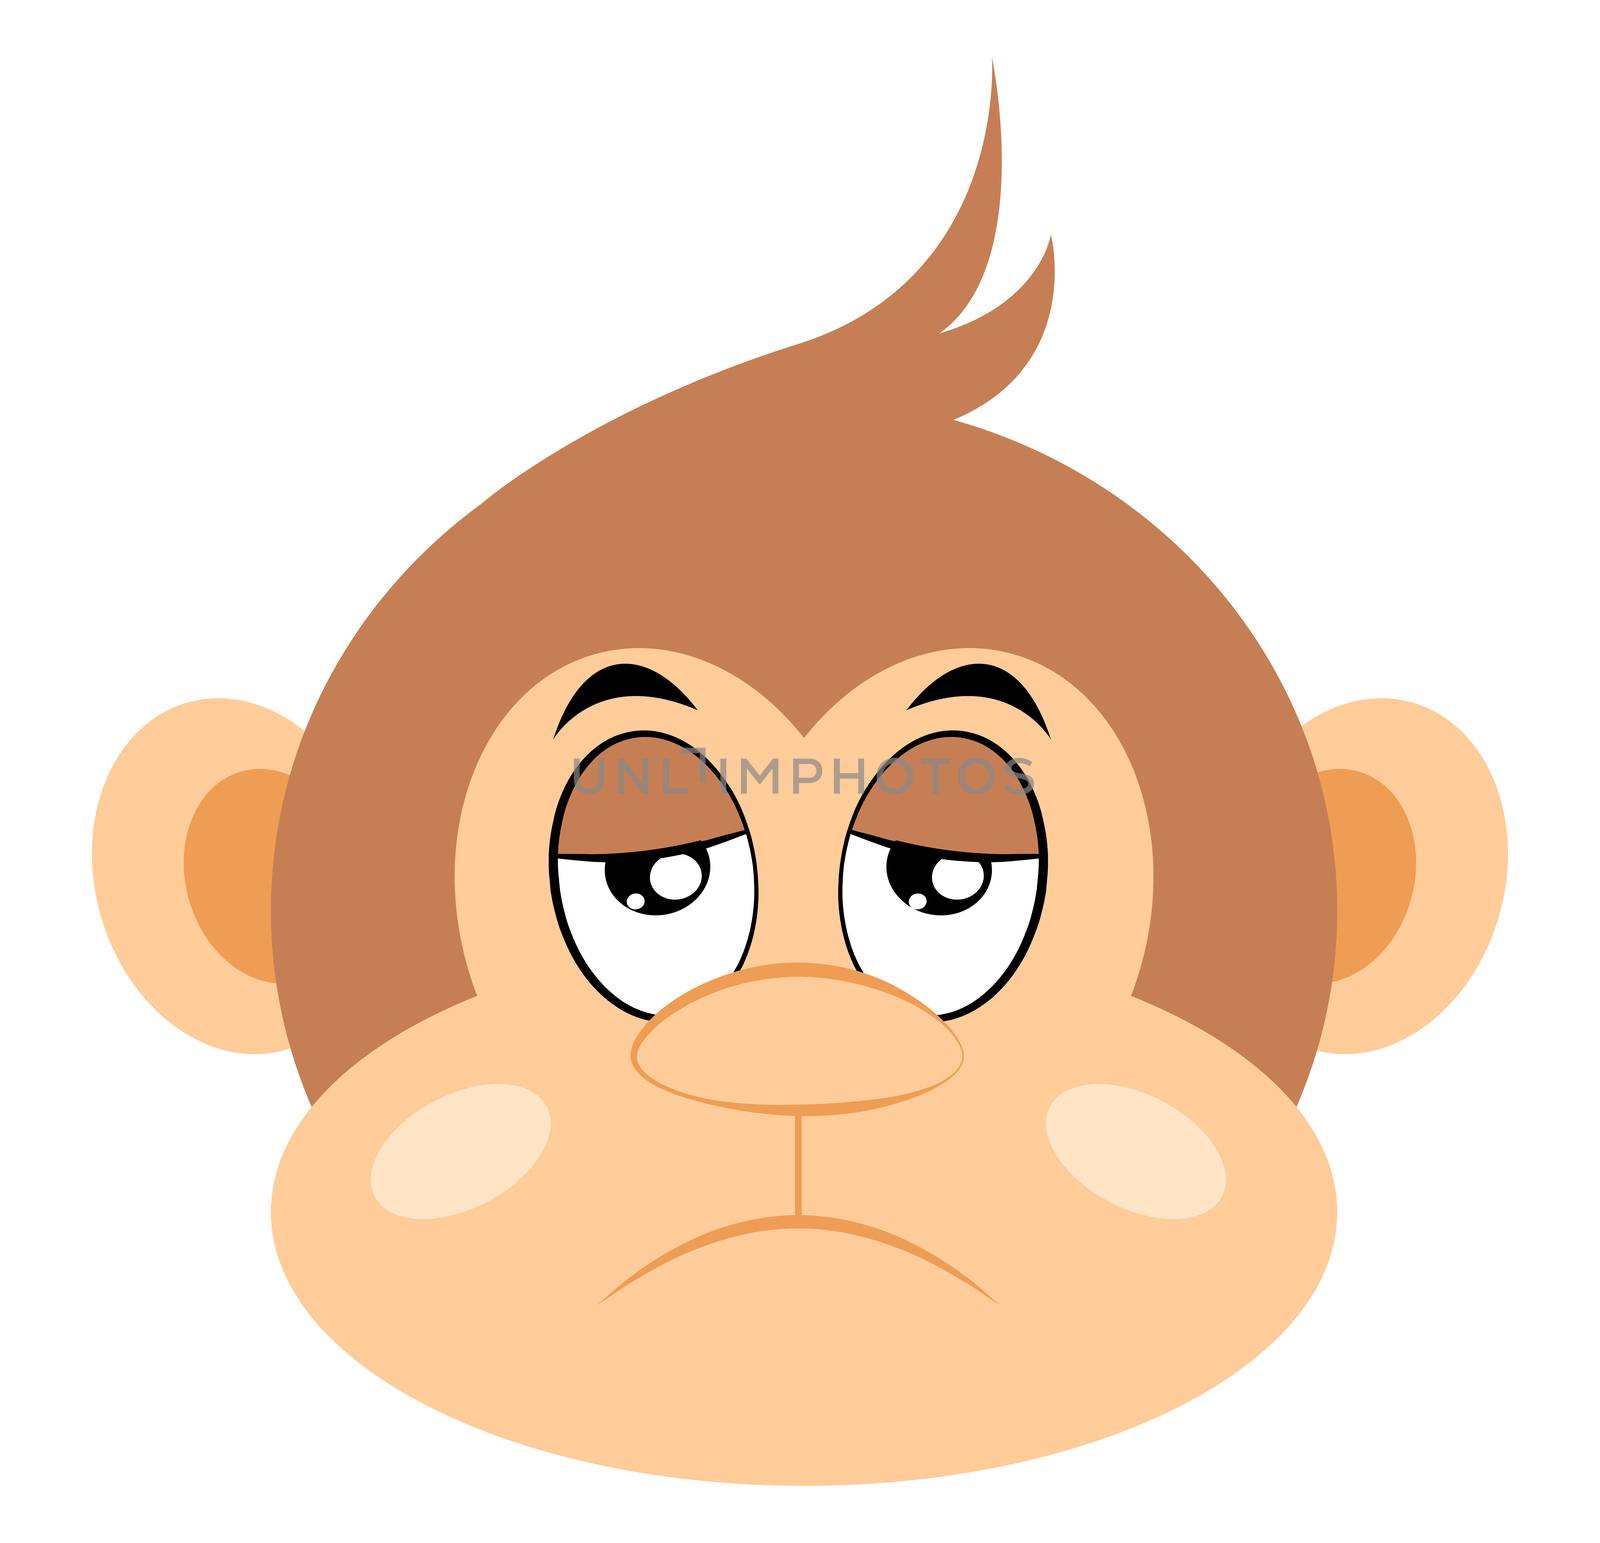 Bored monkey, illustration, vector on white background by Morphart